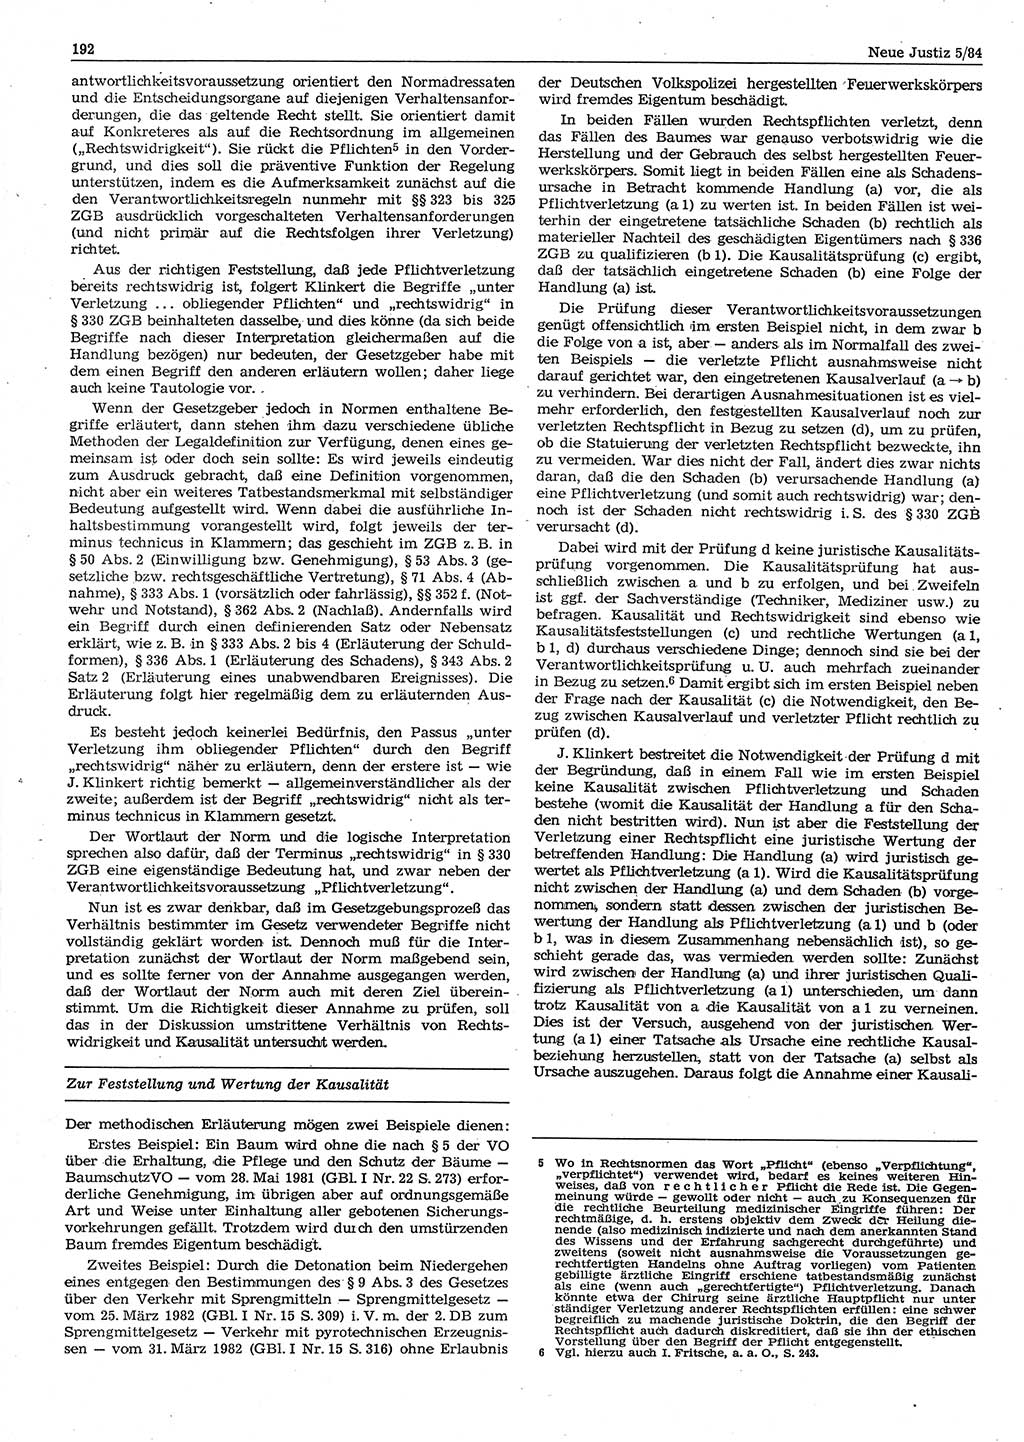 Neue Justiz (NJ), Zeitschrift für sozialistisches Recht und Gesetzlichkeit [Deutsche Demokratische Republik (DDR)], 38. Jahrgang 1984, Seite 192 (NJ DDR 1984, S. 192)